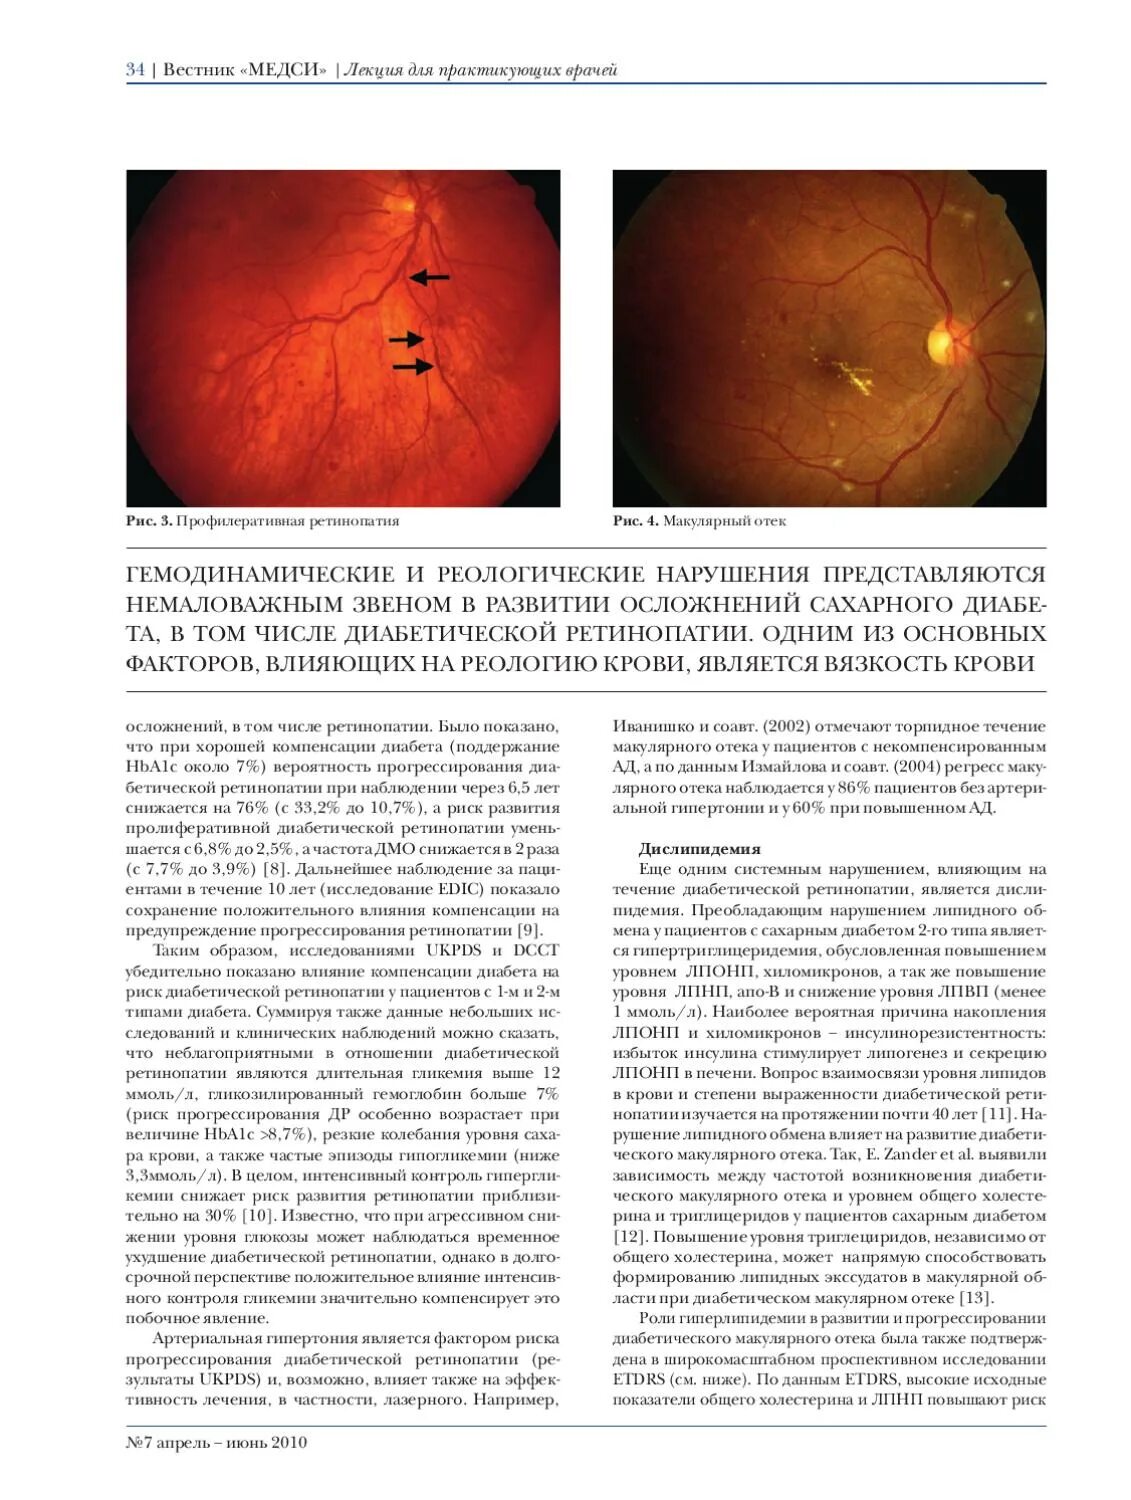 Макулярный отек лечение. Отек при диабетической ретинопатии. Диабетический макулярный отек (ДМО). Диабетическая ретинопатия факторы риска и прогрессирования.